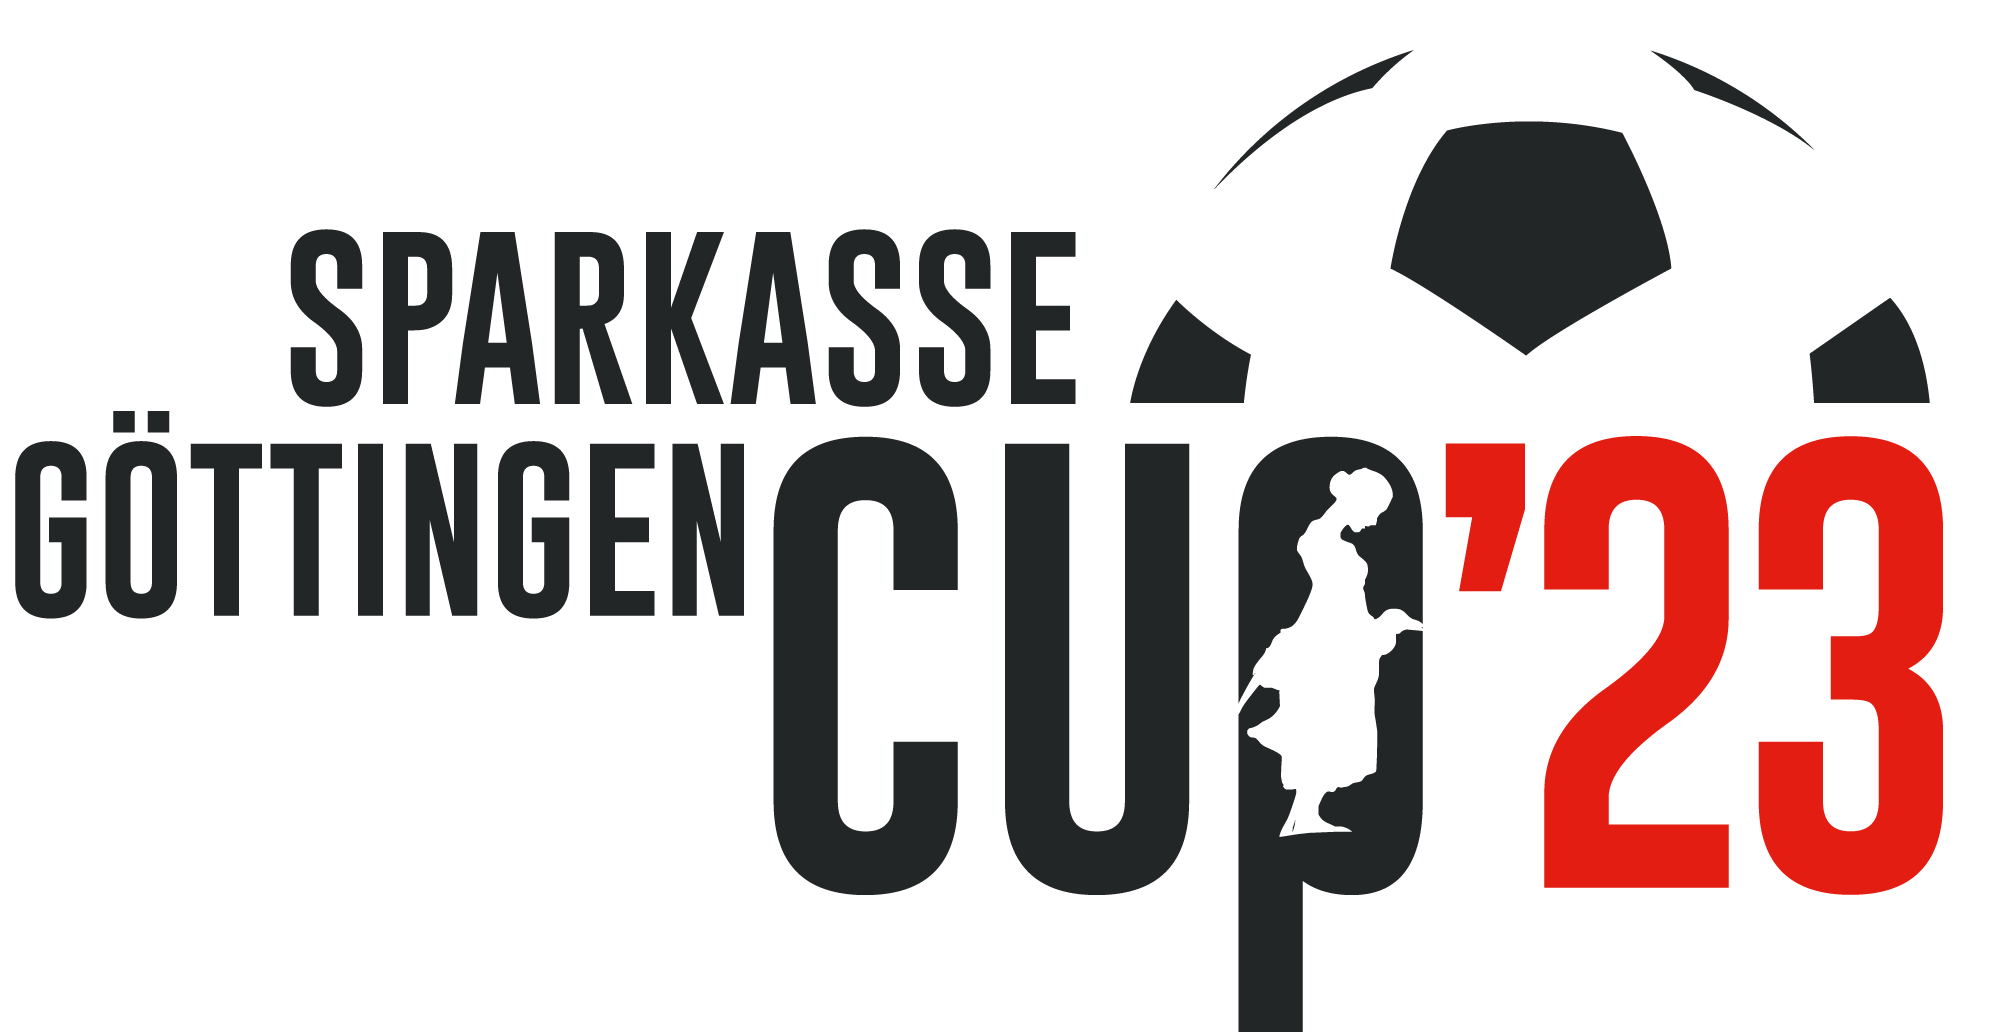 18. Sparkasse Göttingen CUP 2023